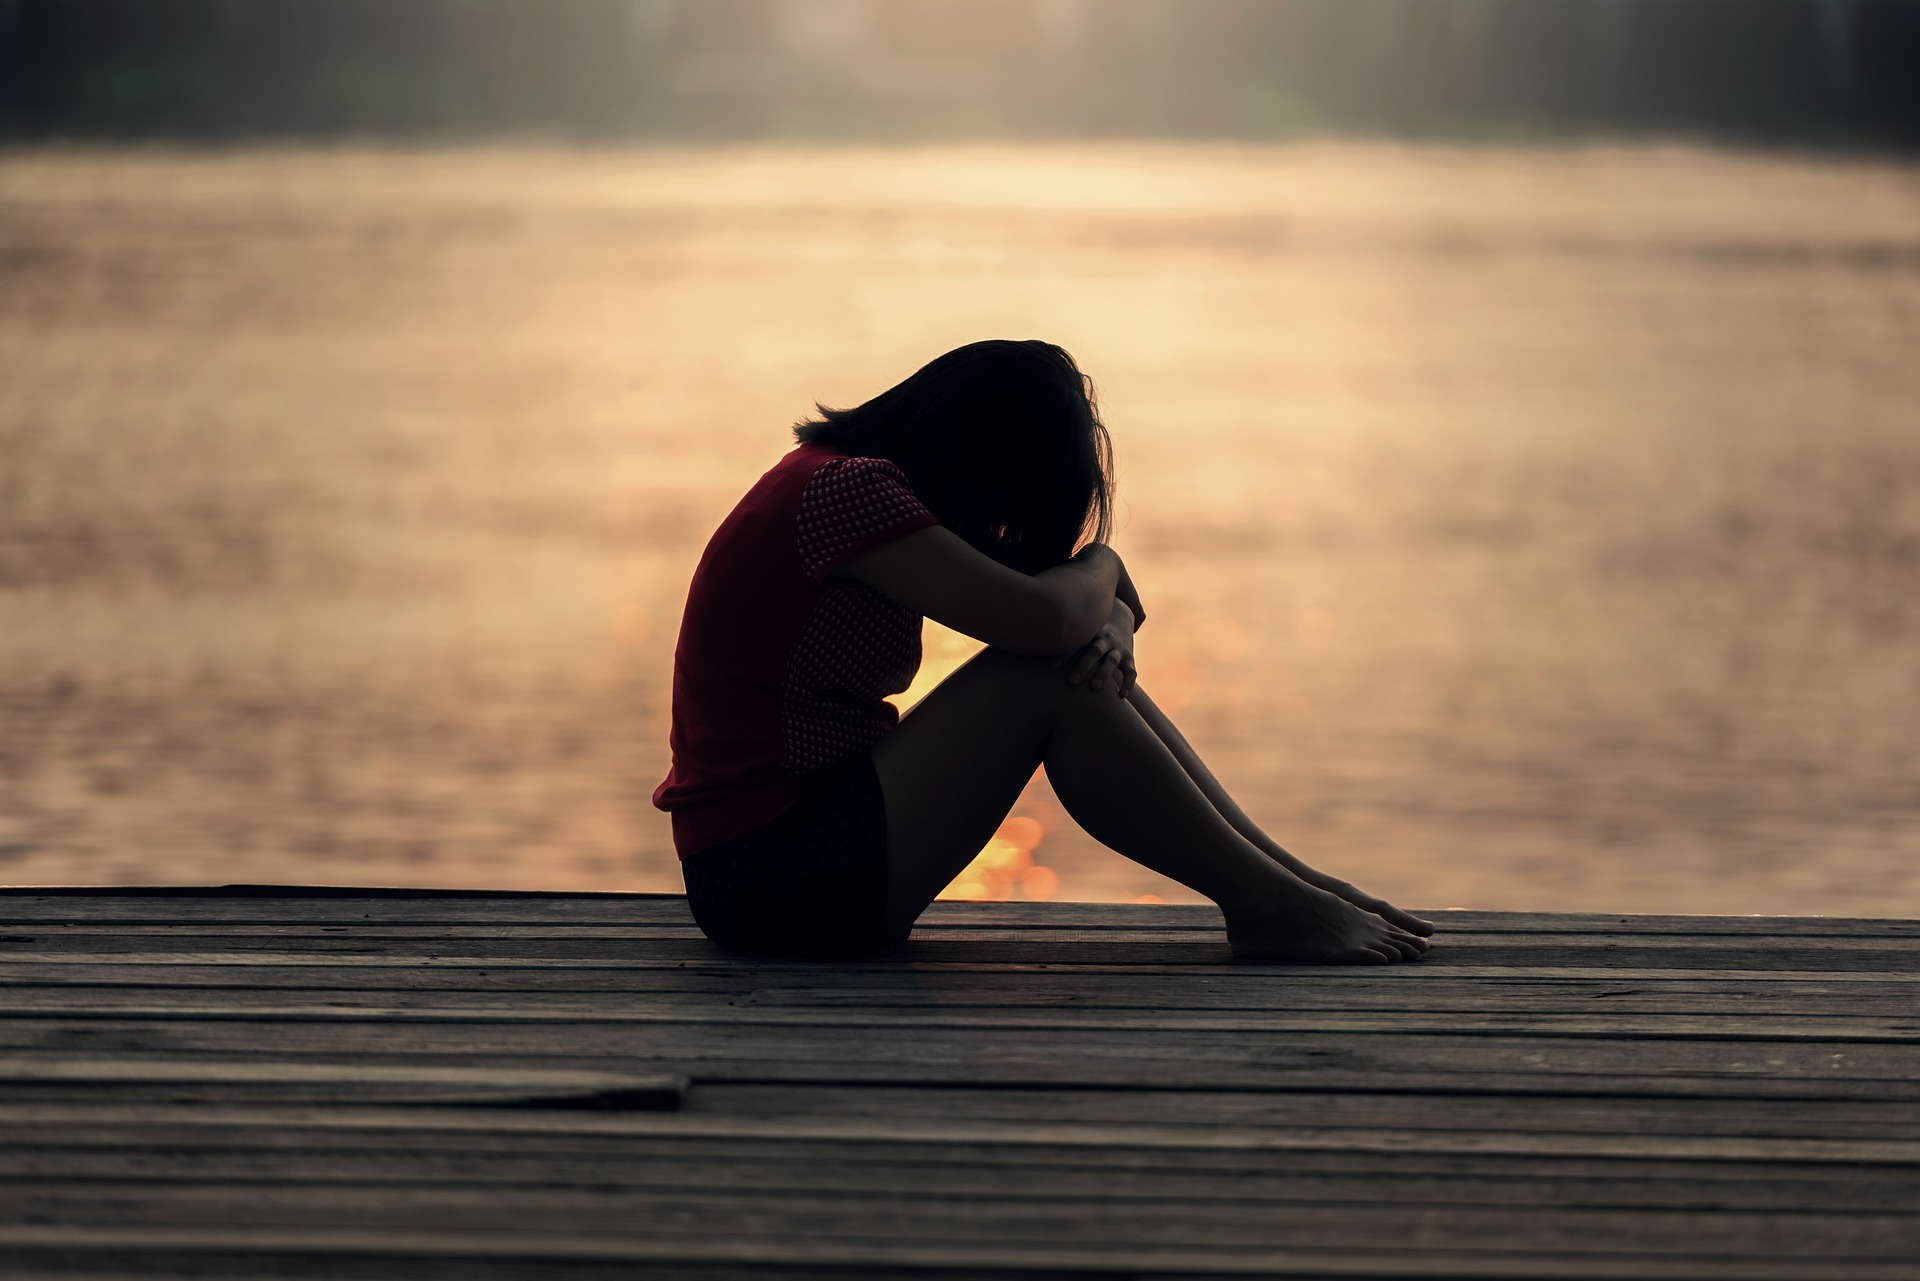 Mengenal Prolonged Grief Disorder, Ketika Rasa Kehilangan Jadi Trauma Jangka Panjang